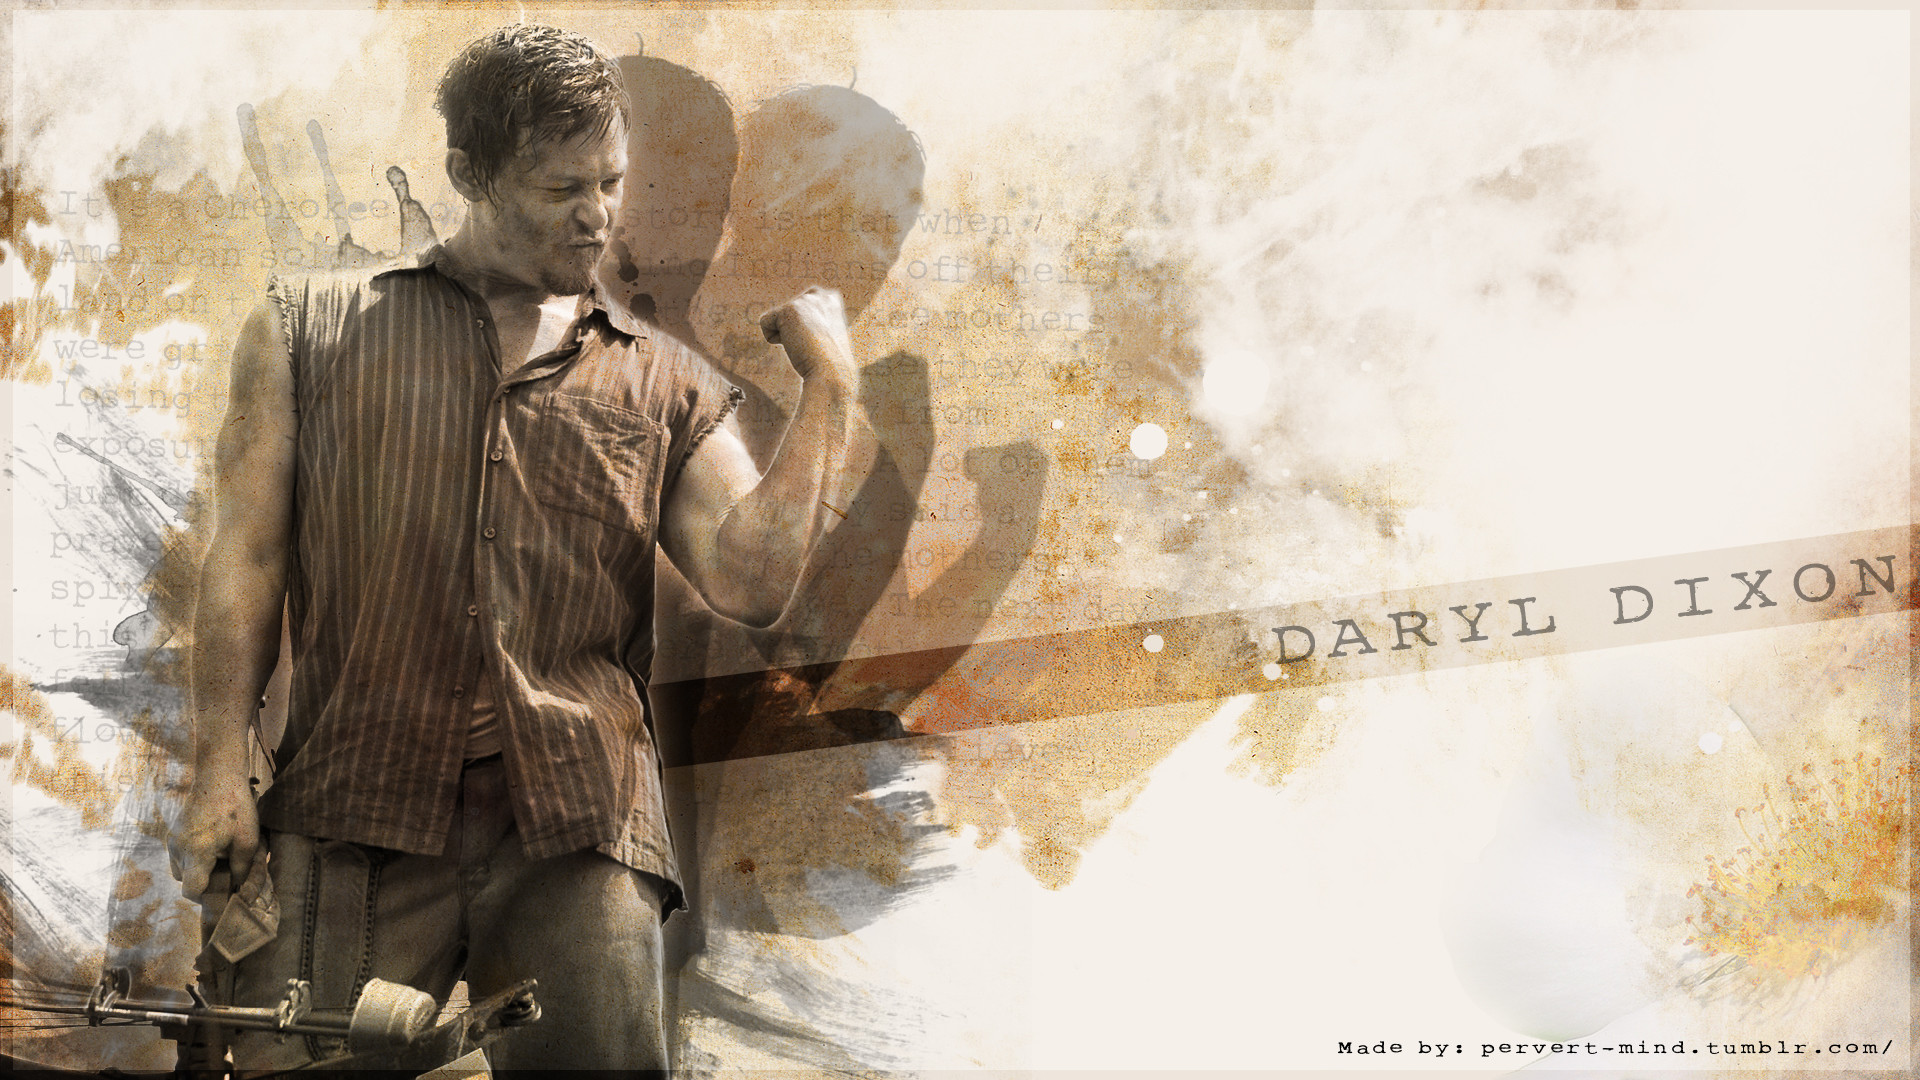 1920x1080 Daryl Dixon - Daryl Dixon Wallpaper (34015181) - Fanpop